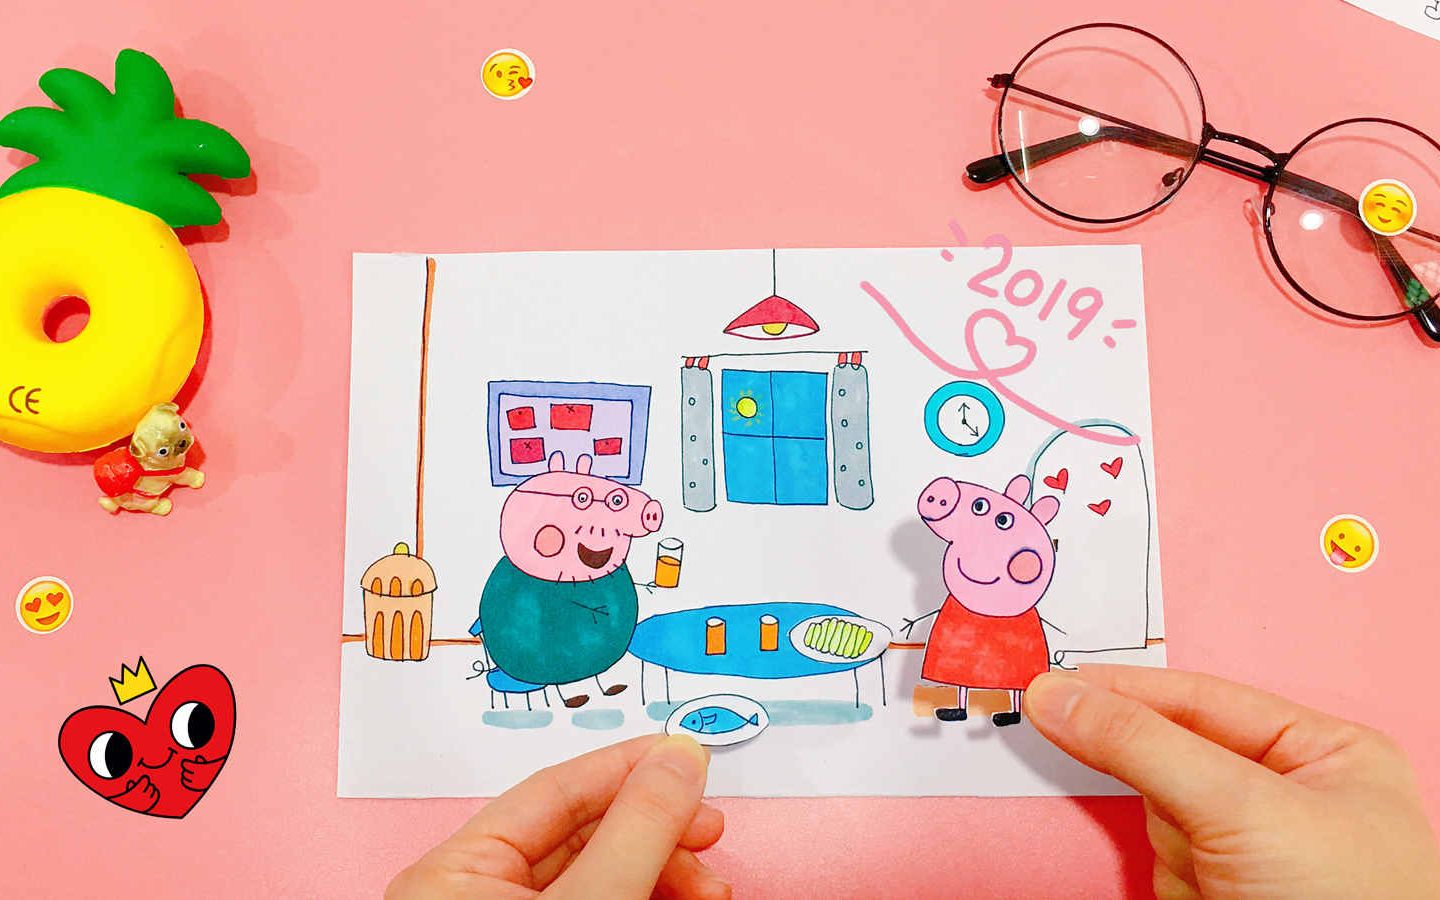 “玩具大联萌”之早教视频:小猪佩奇积木玩具